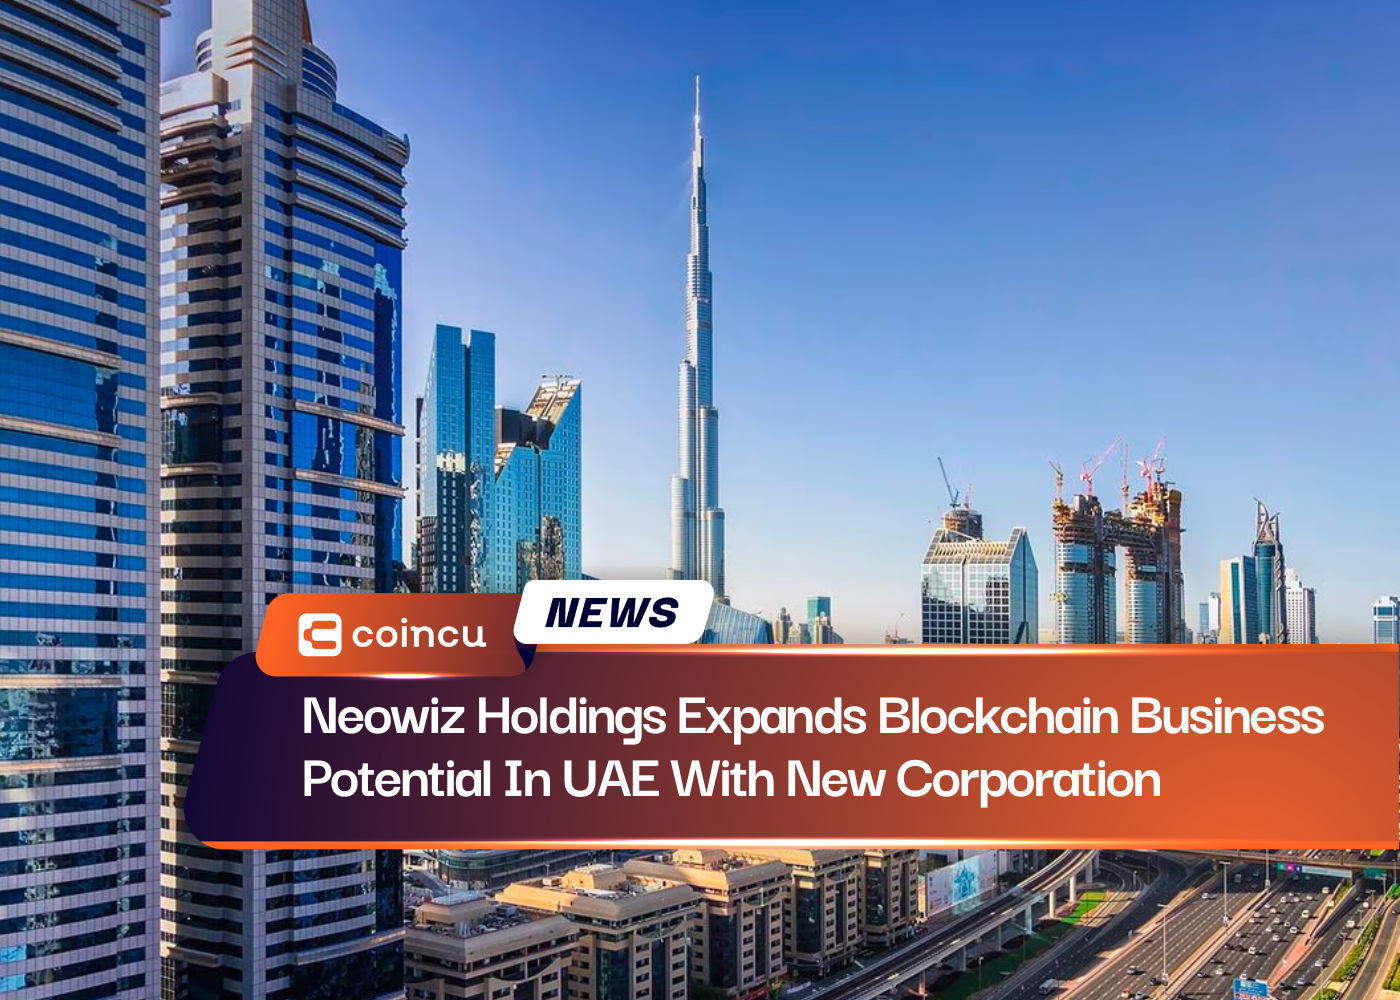 تقوم شركة Neowiz Holdings بتوسيع إمكانات أعمال Blockchain في دولة الإمارات العربية المتحدة من خلال شركة جديدة